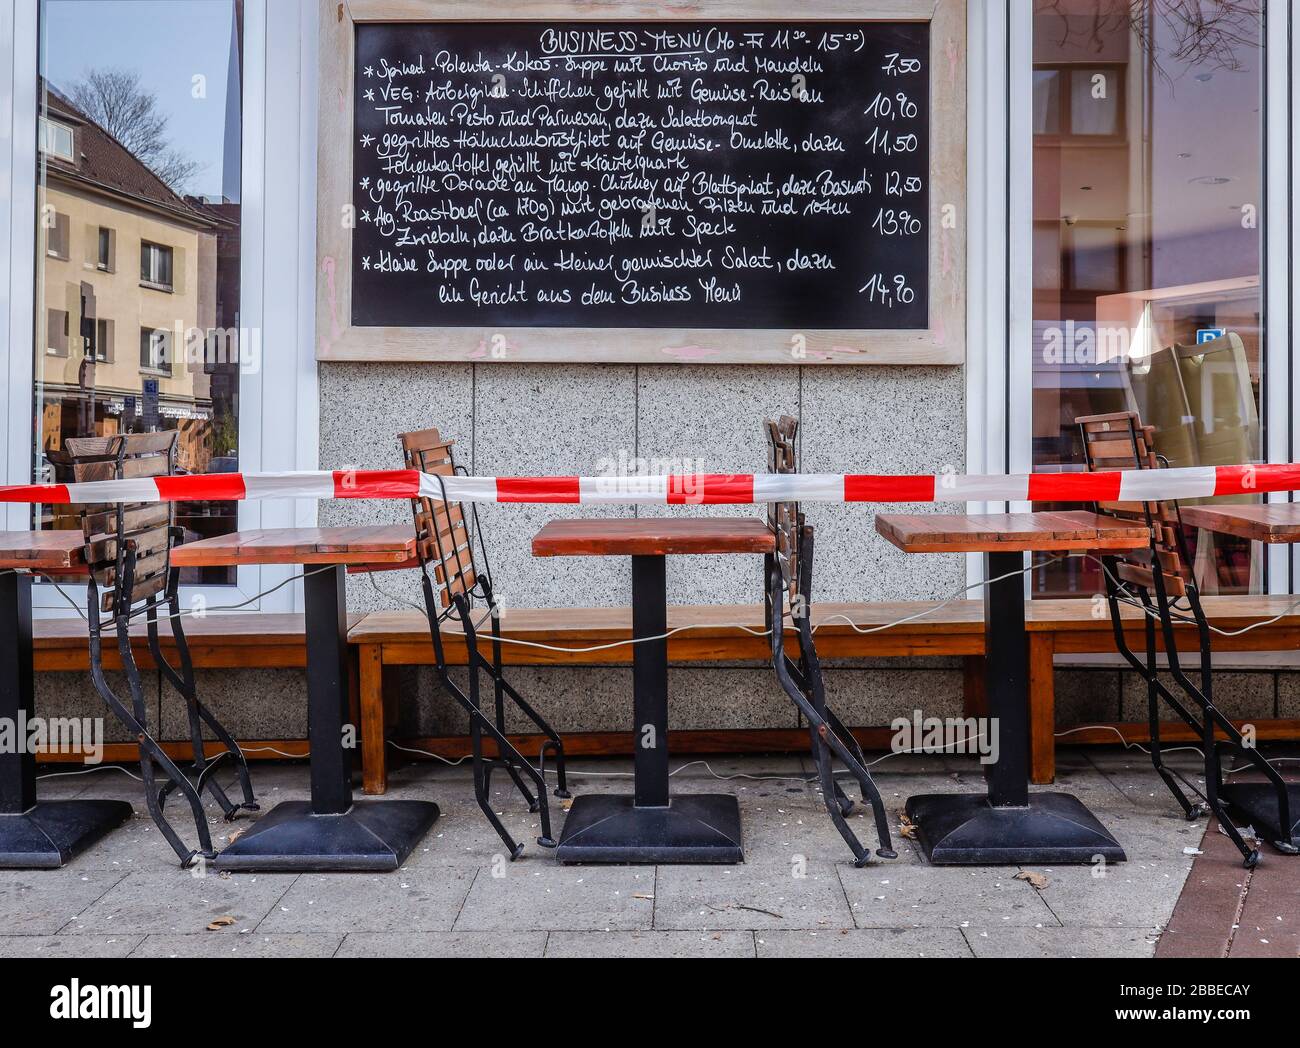 27.03.2020, Essen, Ruhrgebiet, Nordrhein-Westfalen, Germany - Coronakrise, closed shops and restaurants on Ruettenscheider Strasse, here the Cafe Zucc Stock Photo